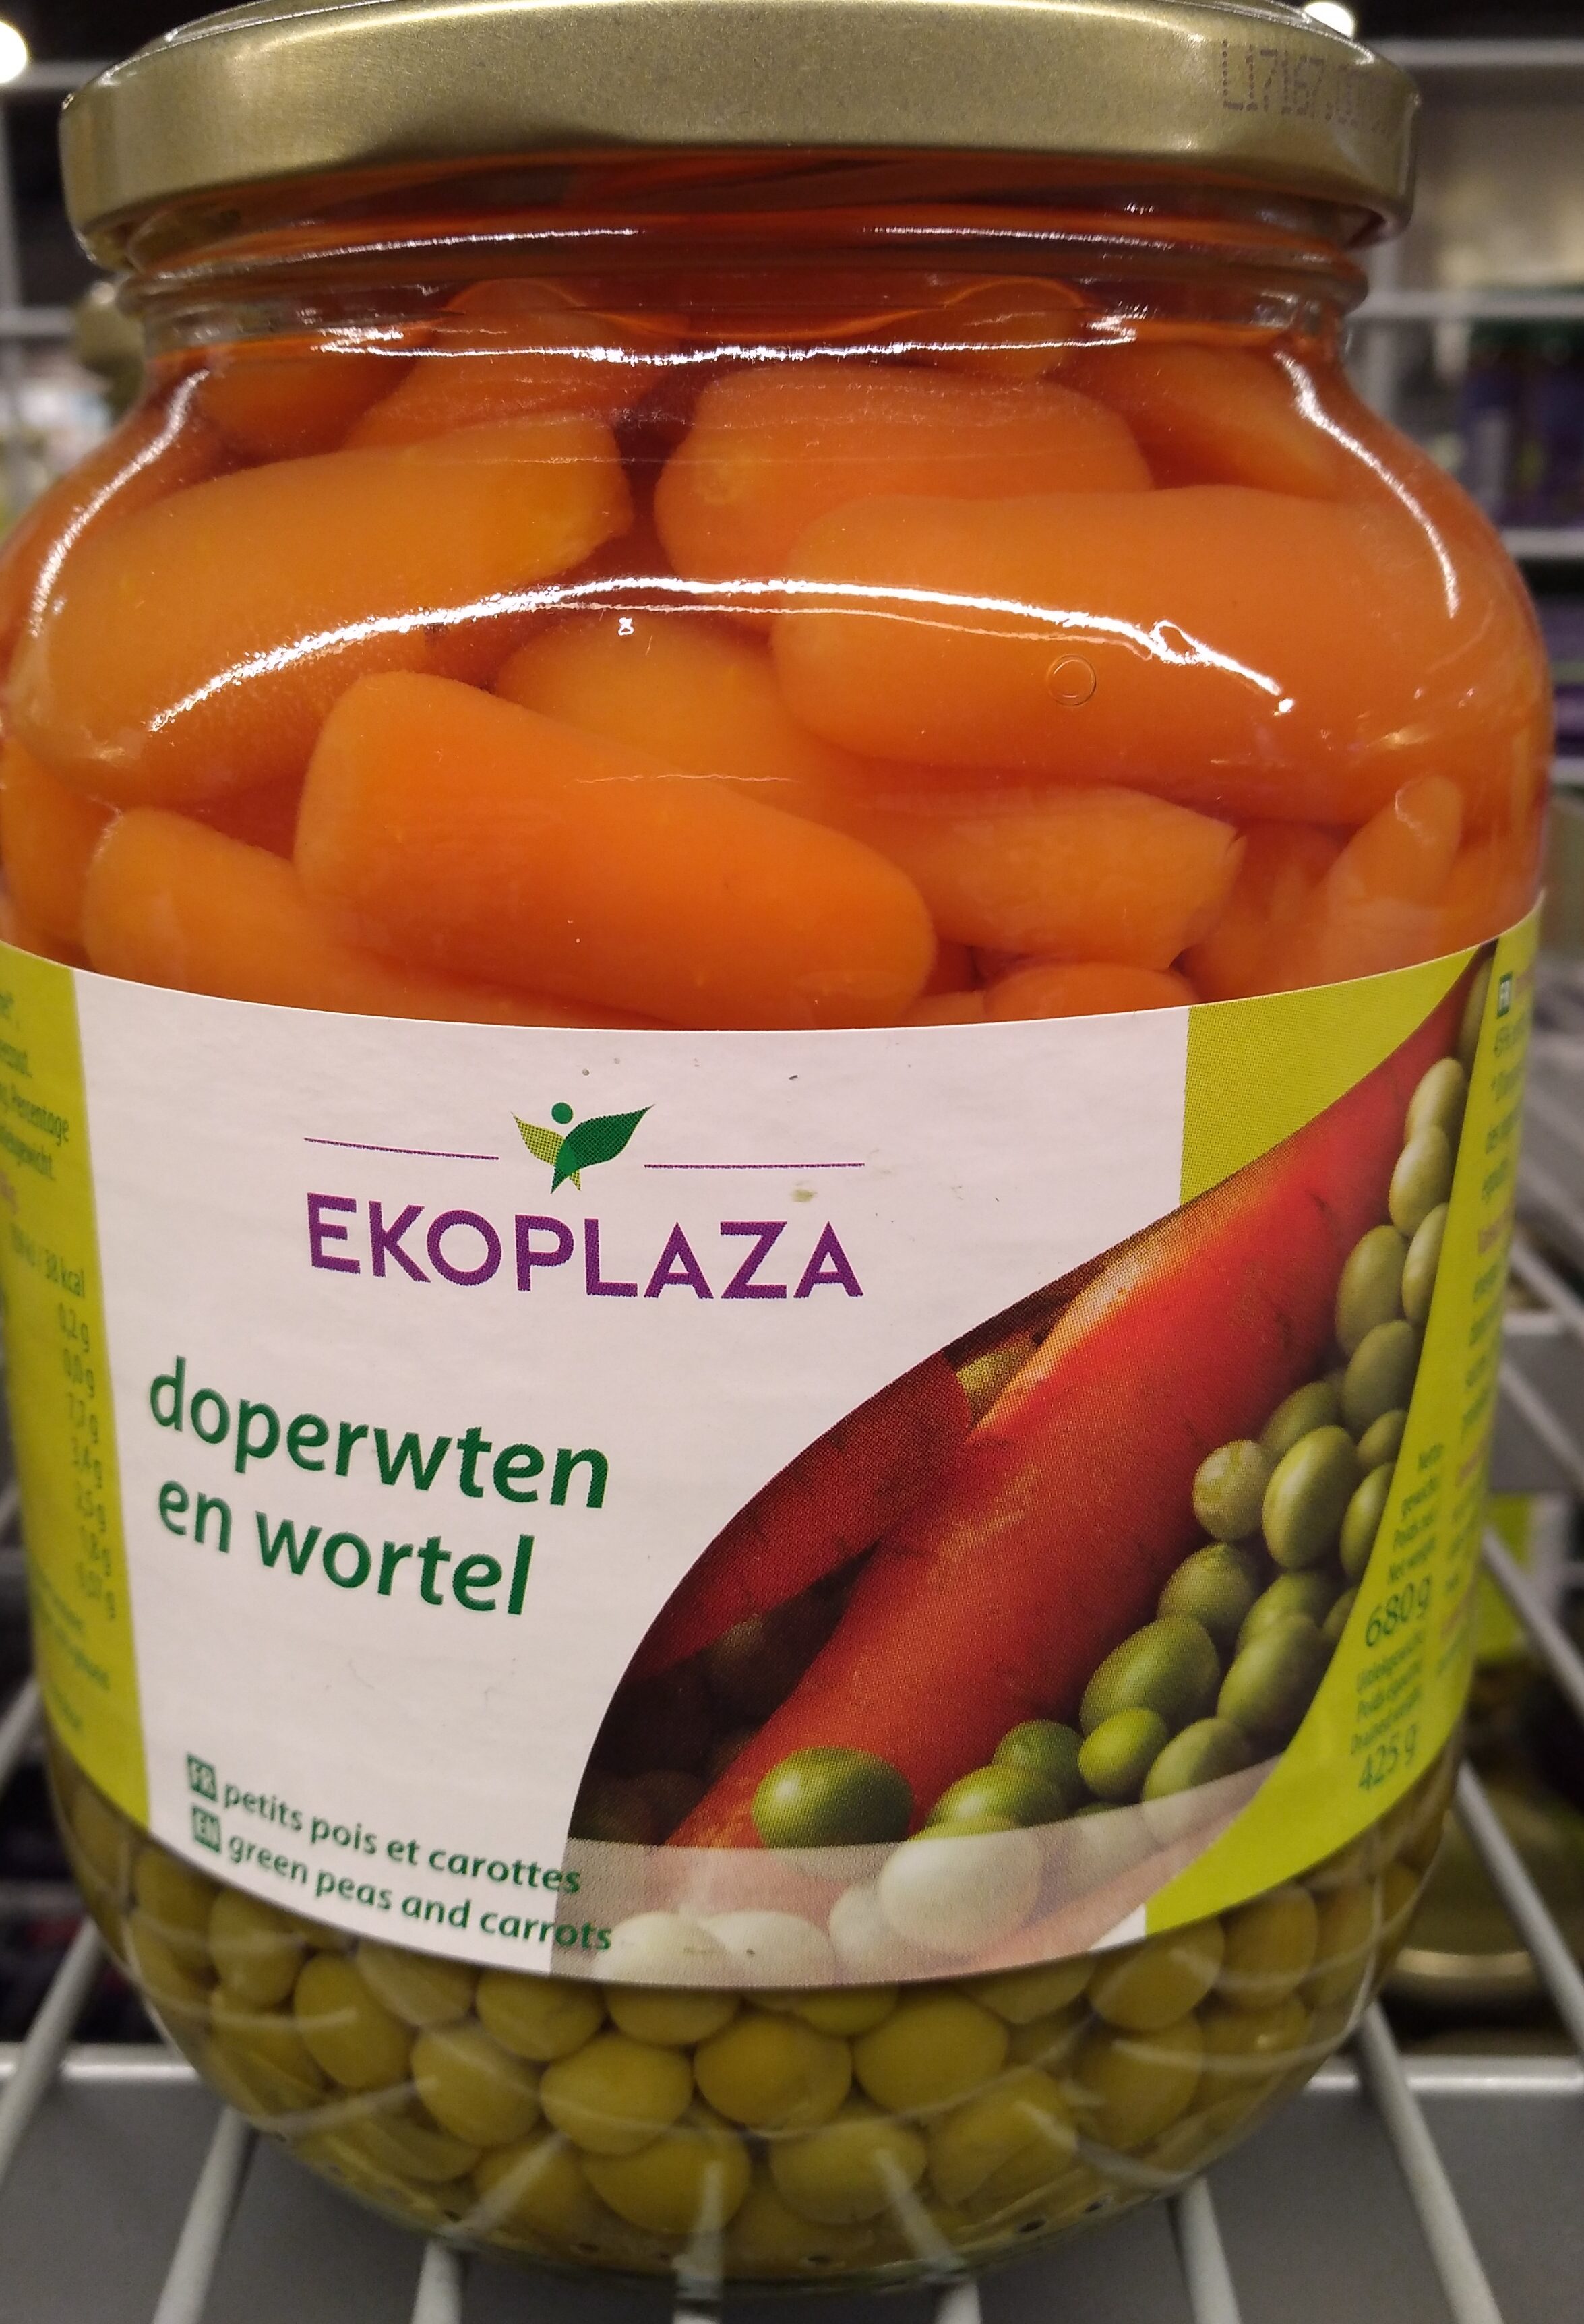 Doperwten en wortel - Product